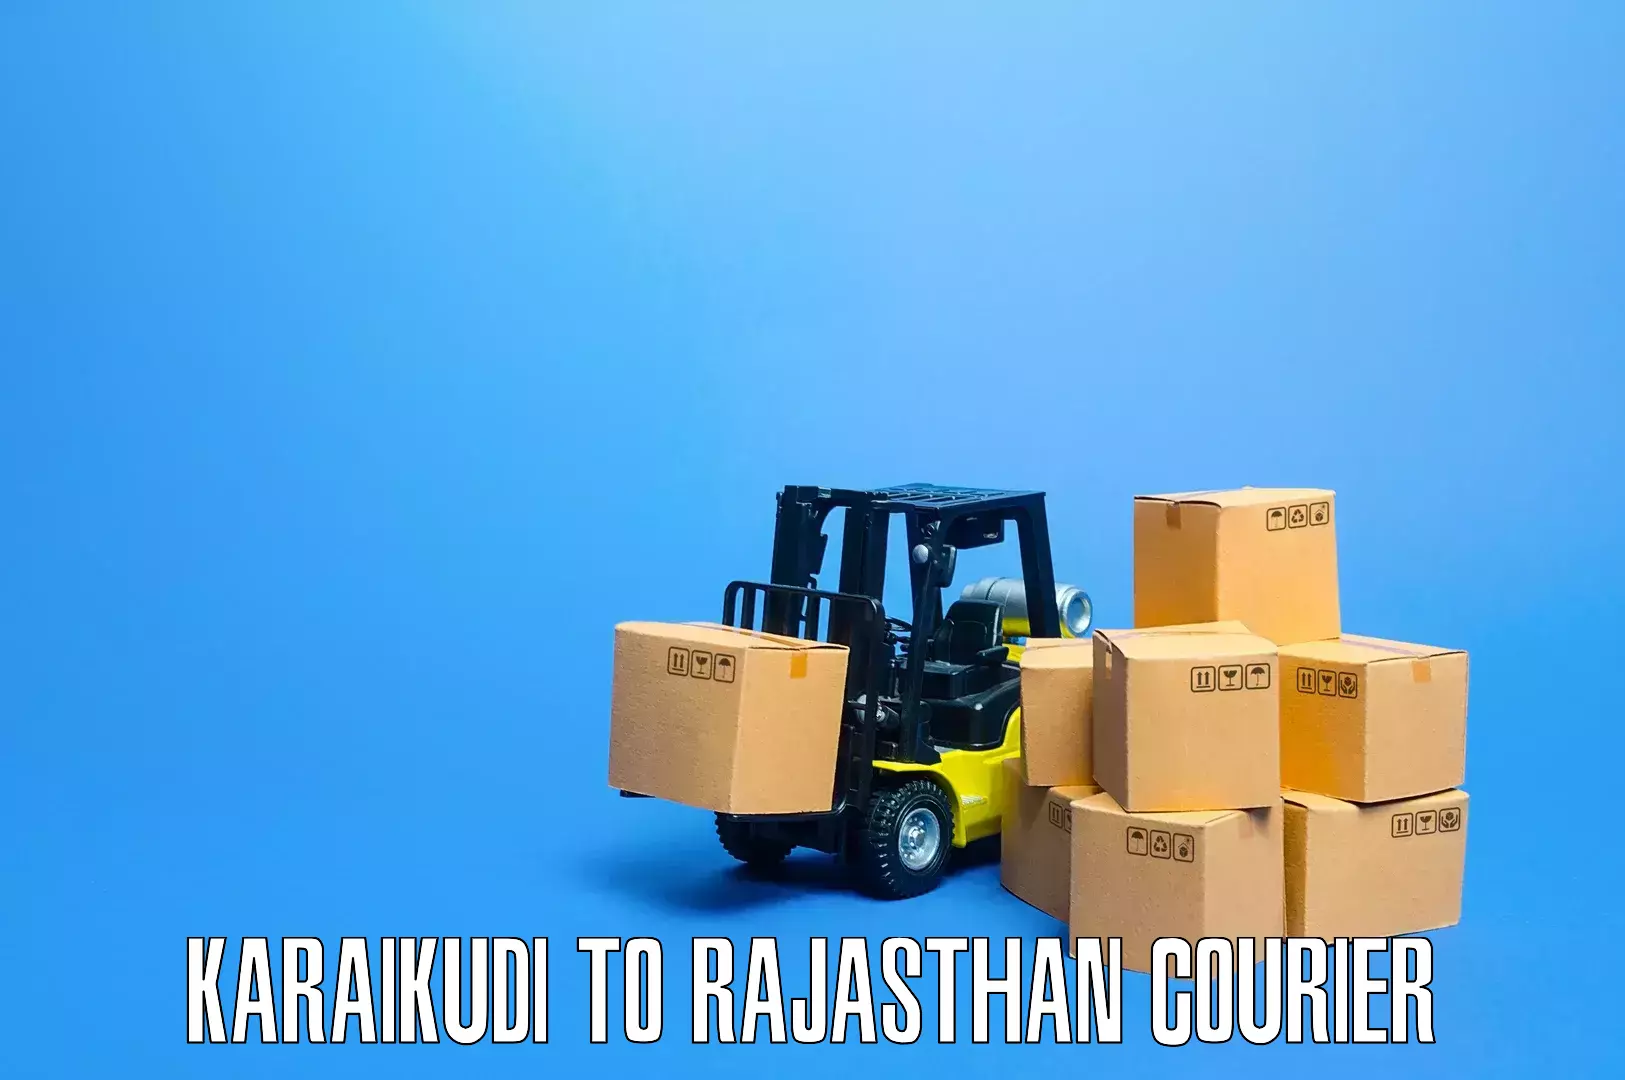 Professional packing and transport Karaikudi to Bikaner